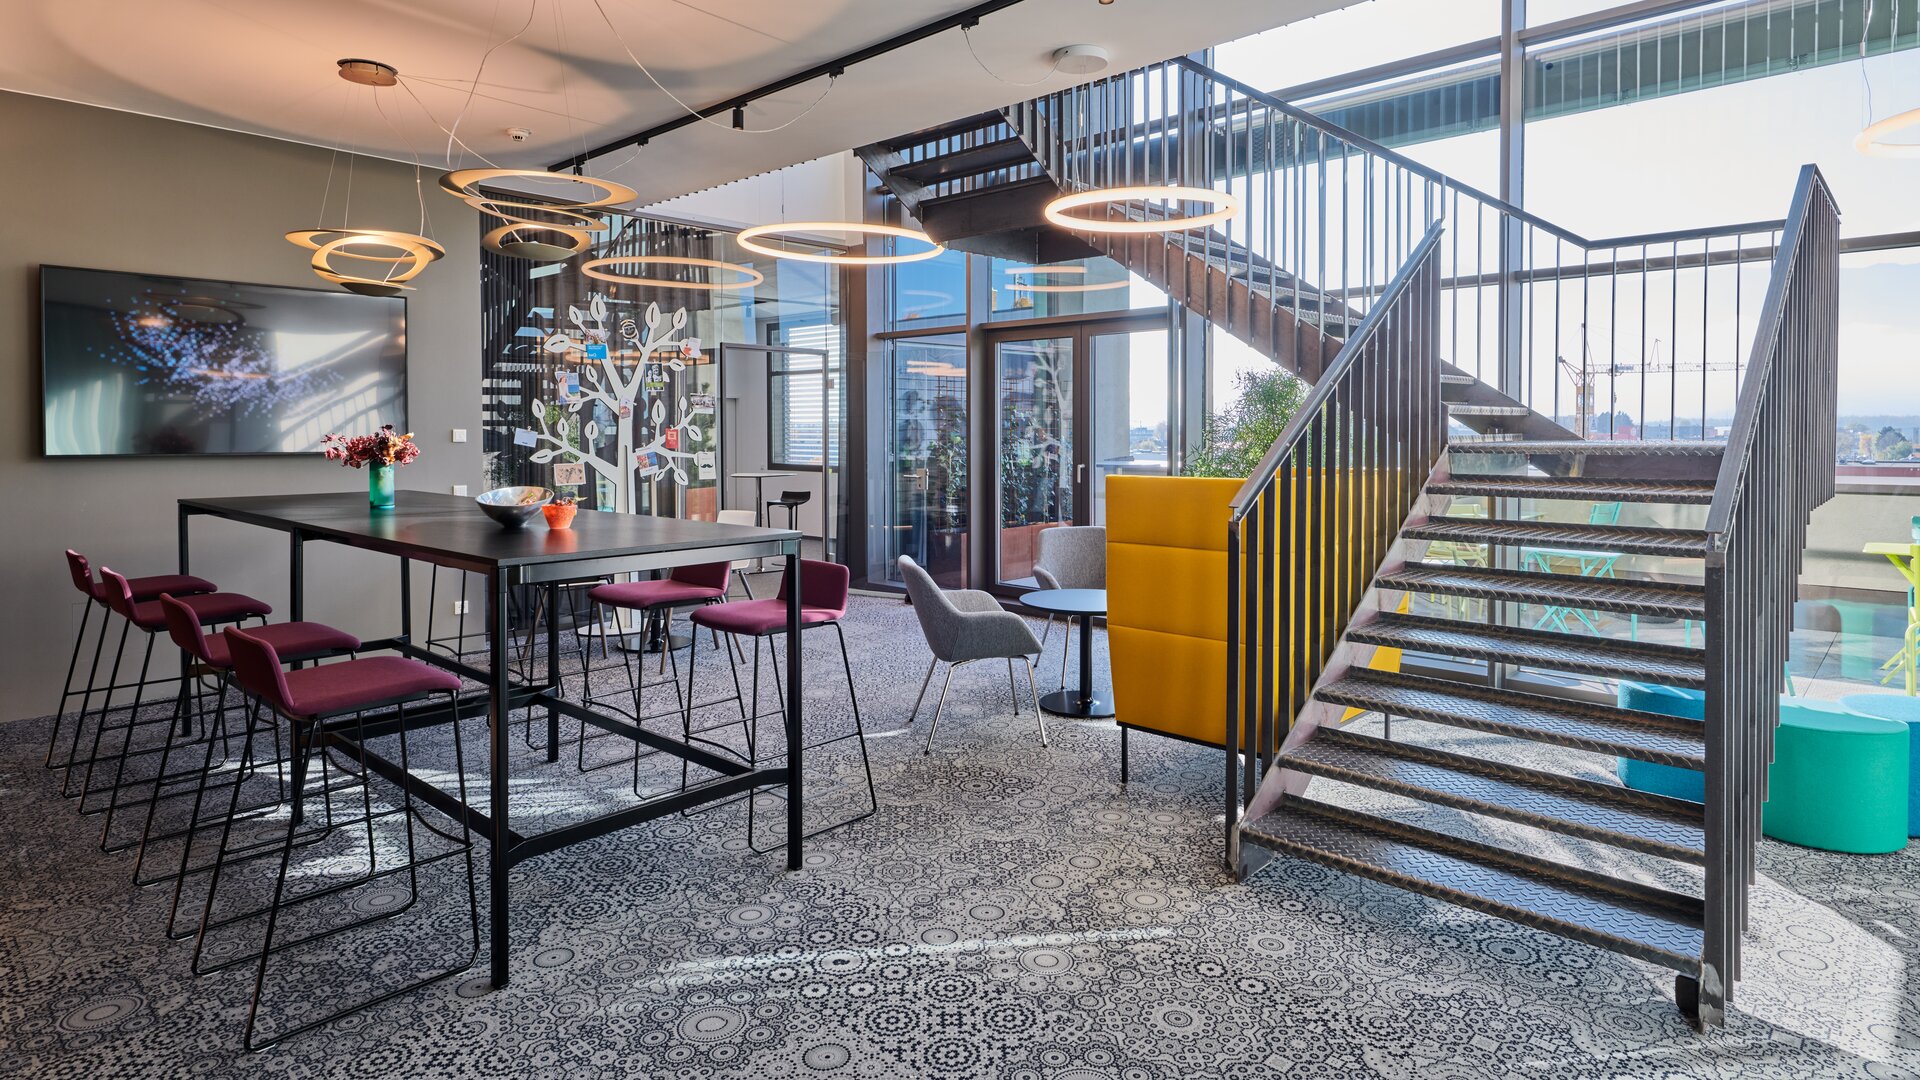 Cafebereich mit Treppe im Coworkingbüro. | © raumpixel.at